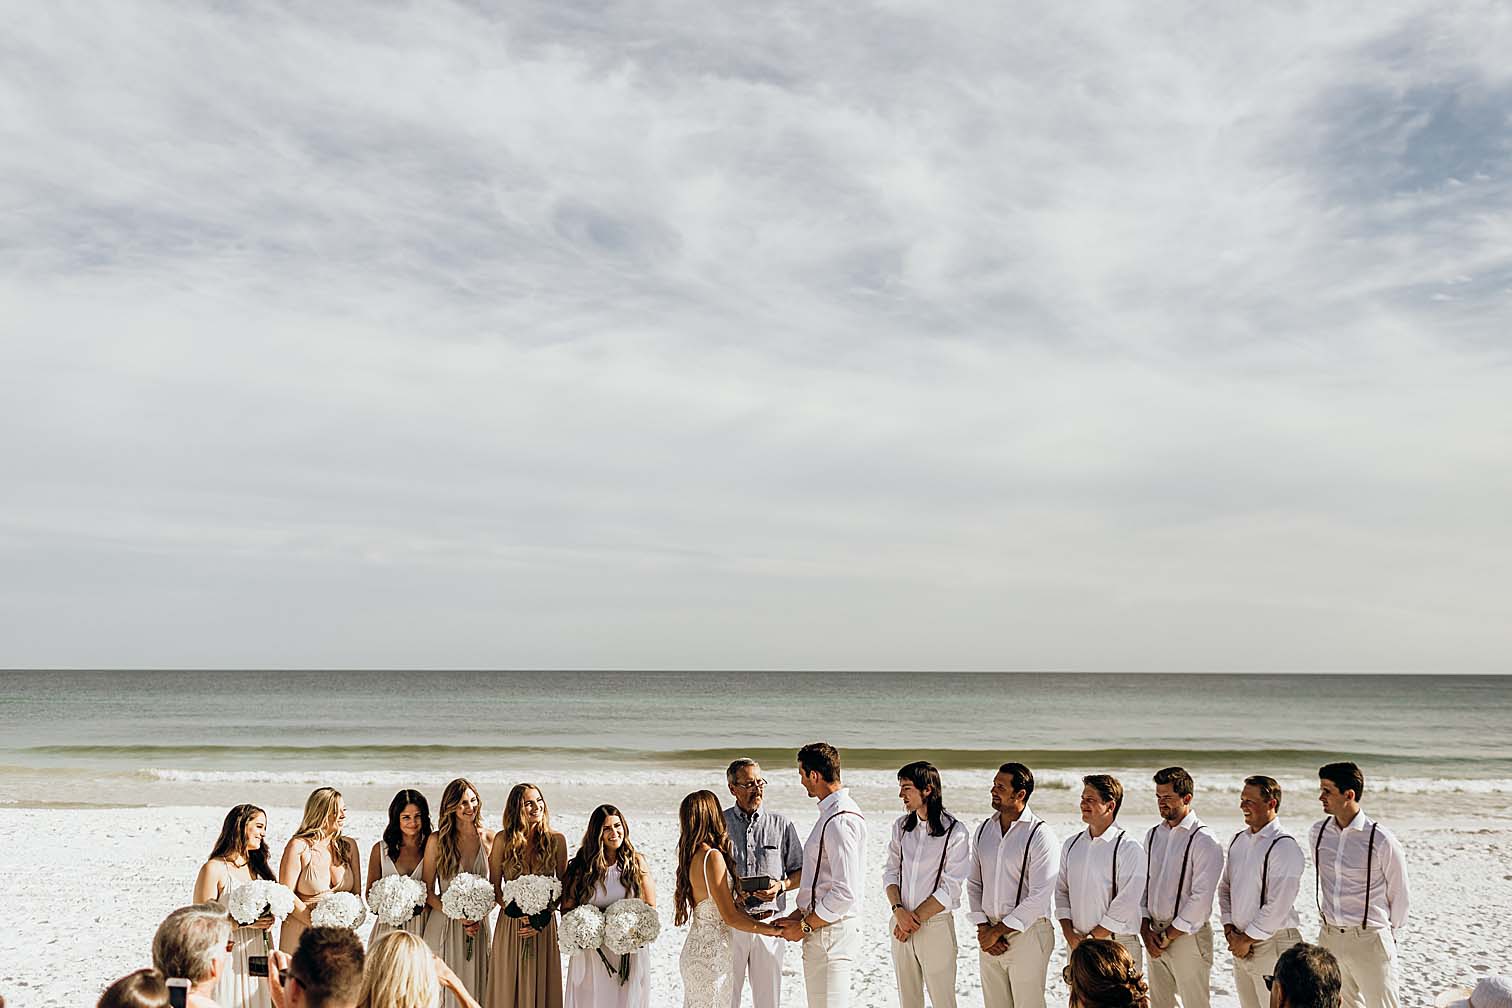 Dicas para casar na praia - Faça um lindo casamento pé na areia